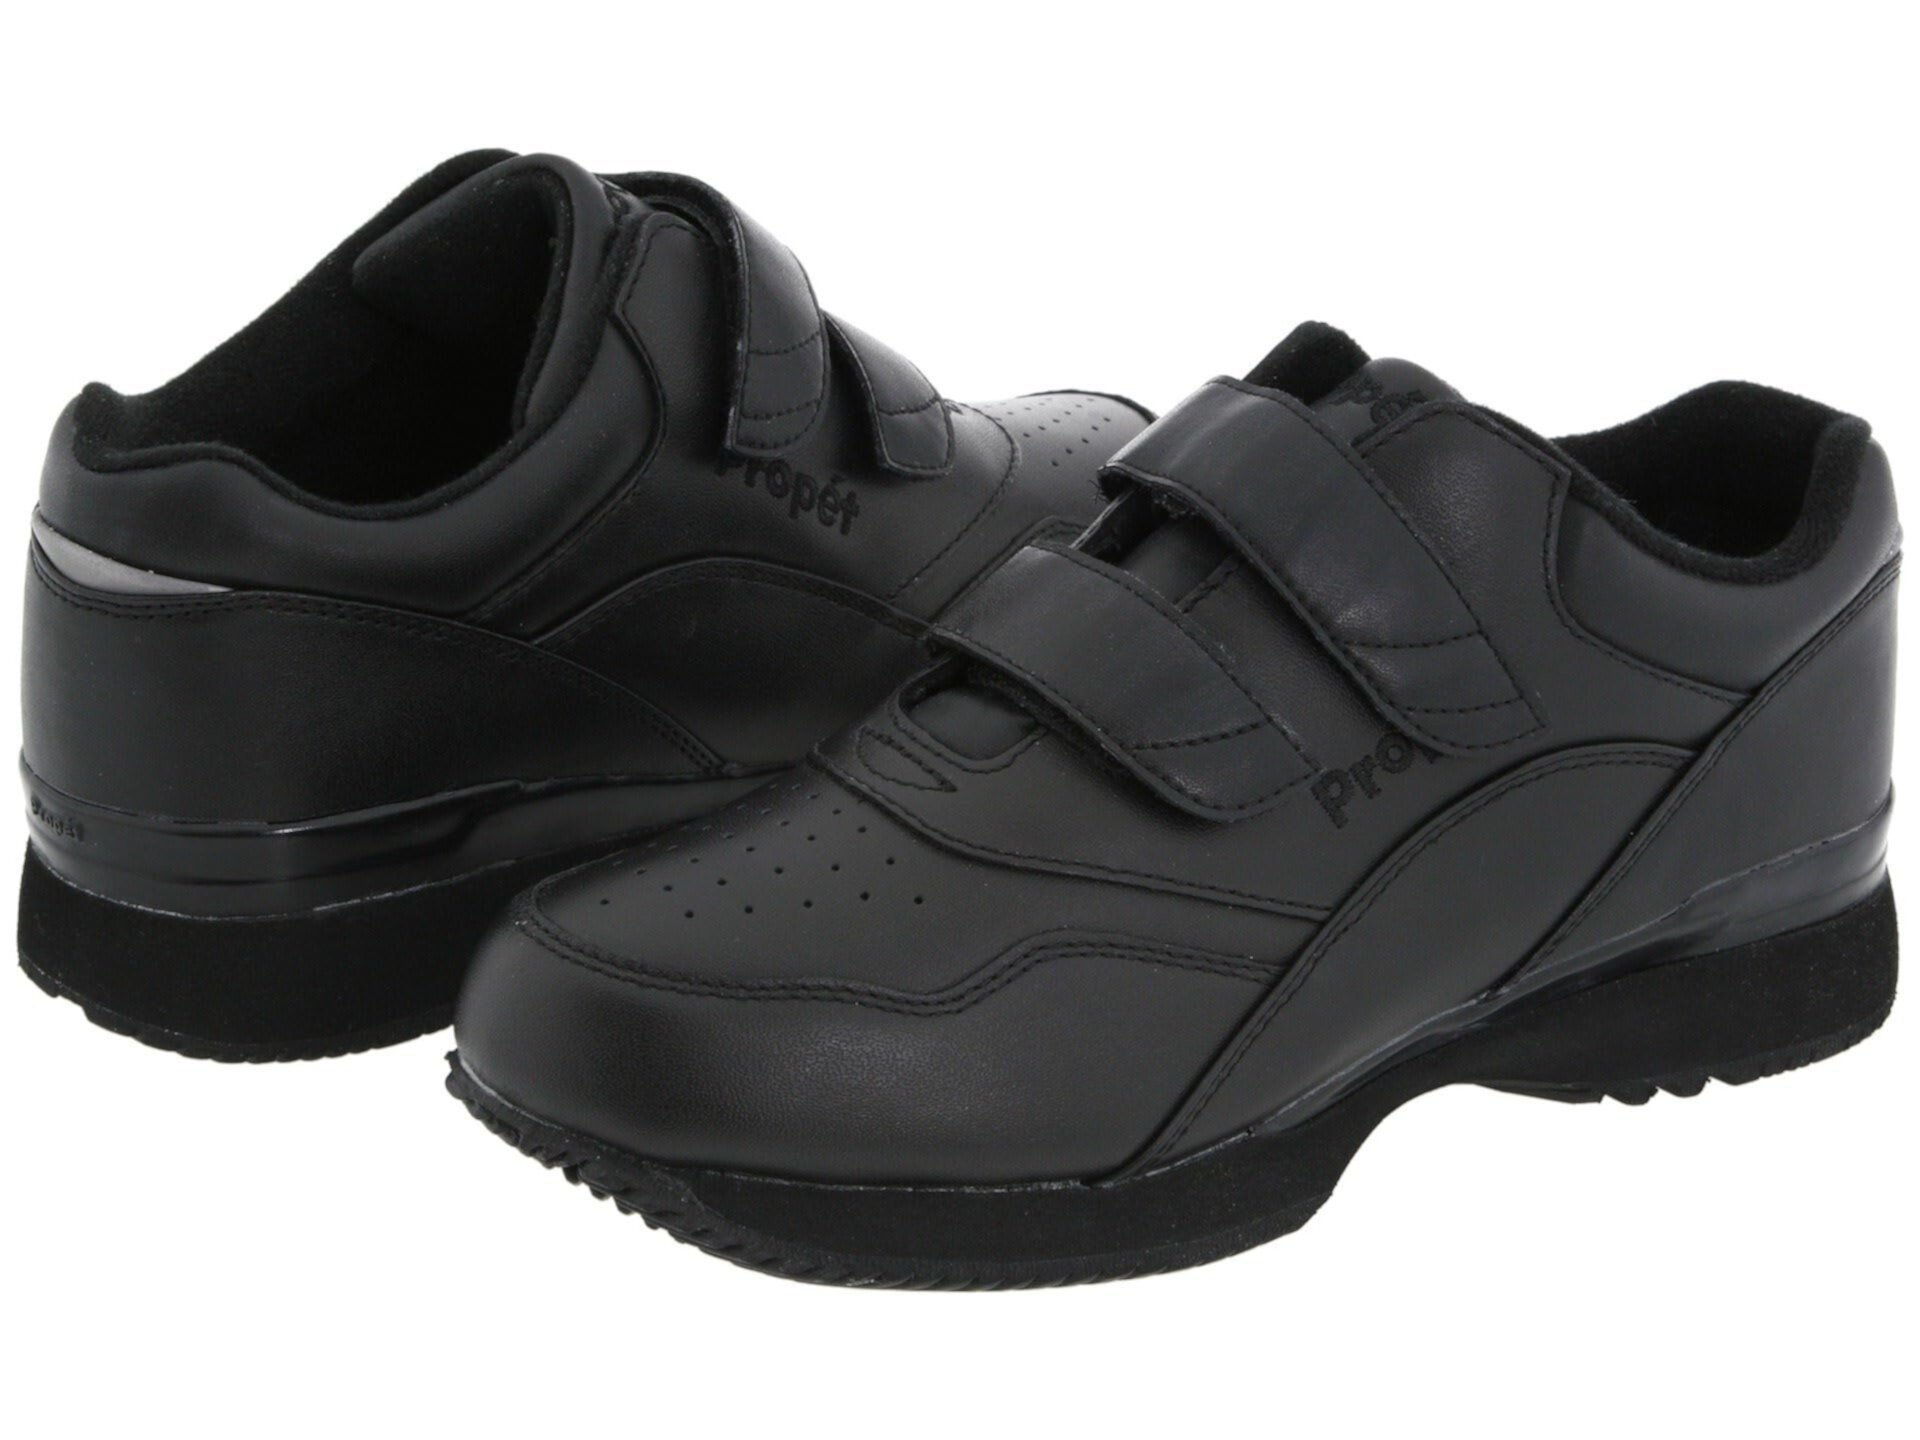 Спортивные ботинки Tour Walker (A5500 Diabetic Shoe) от Propet для женщин Propet